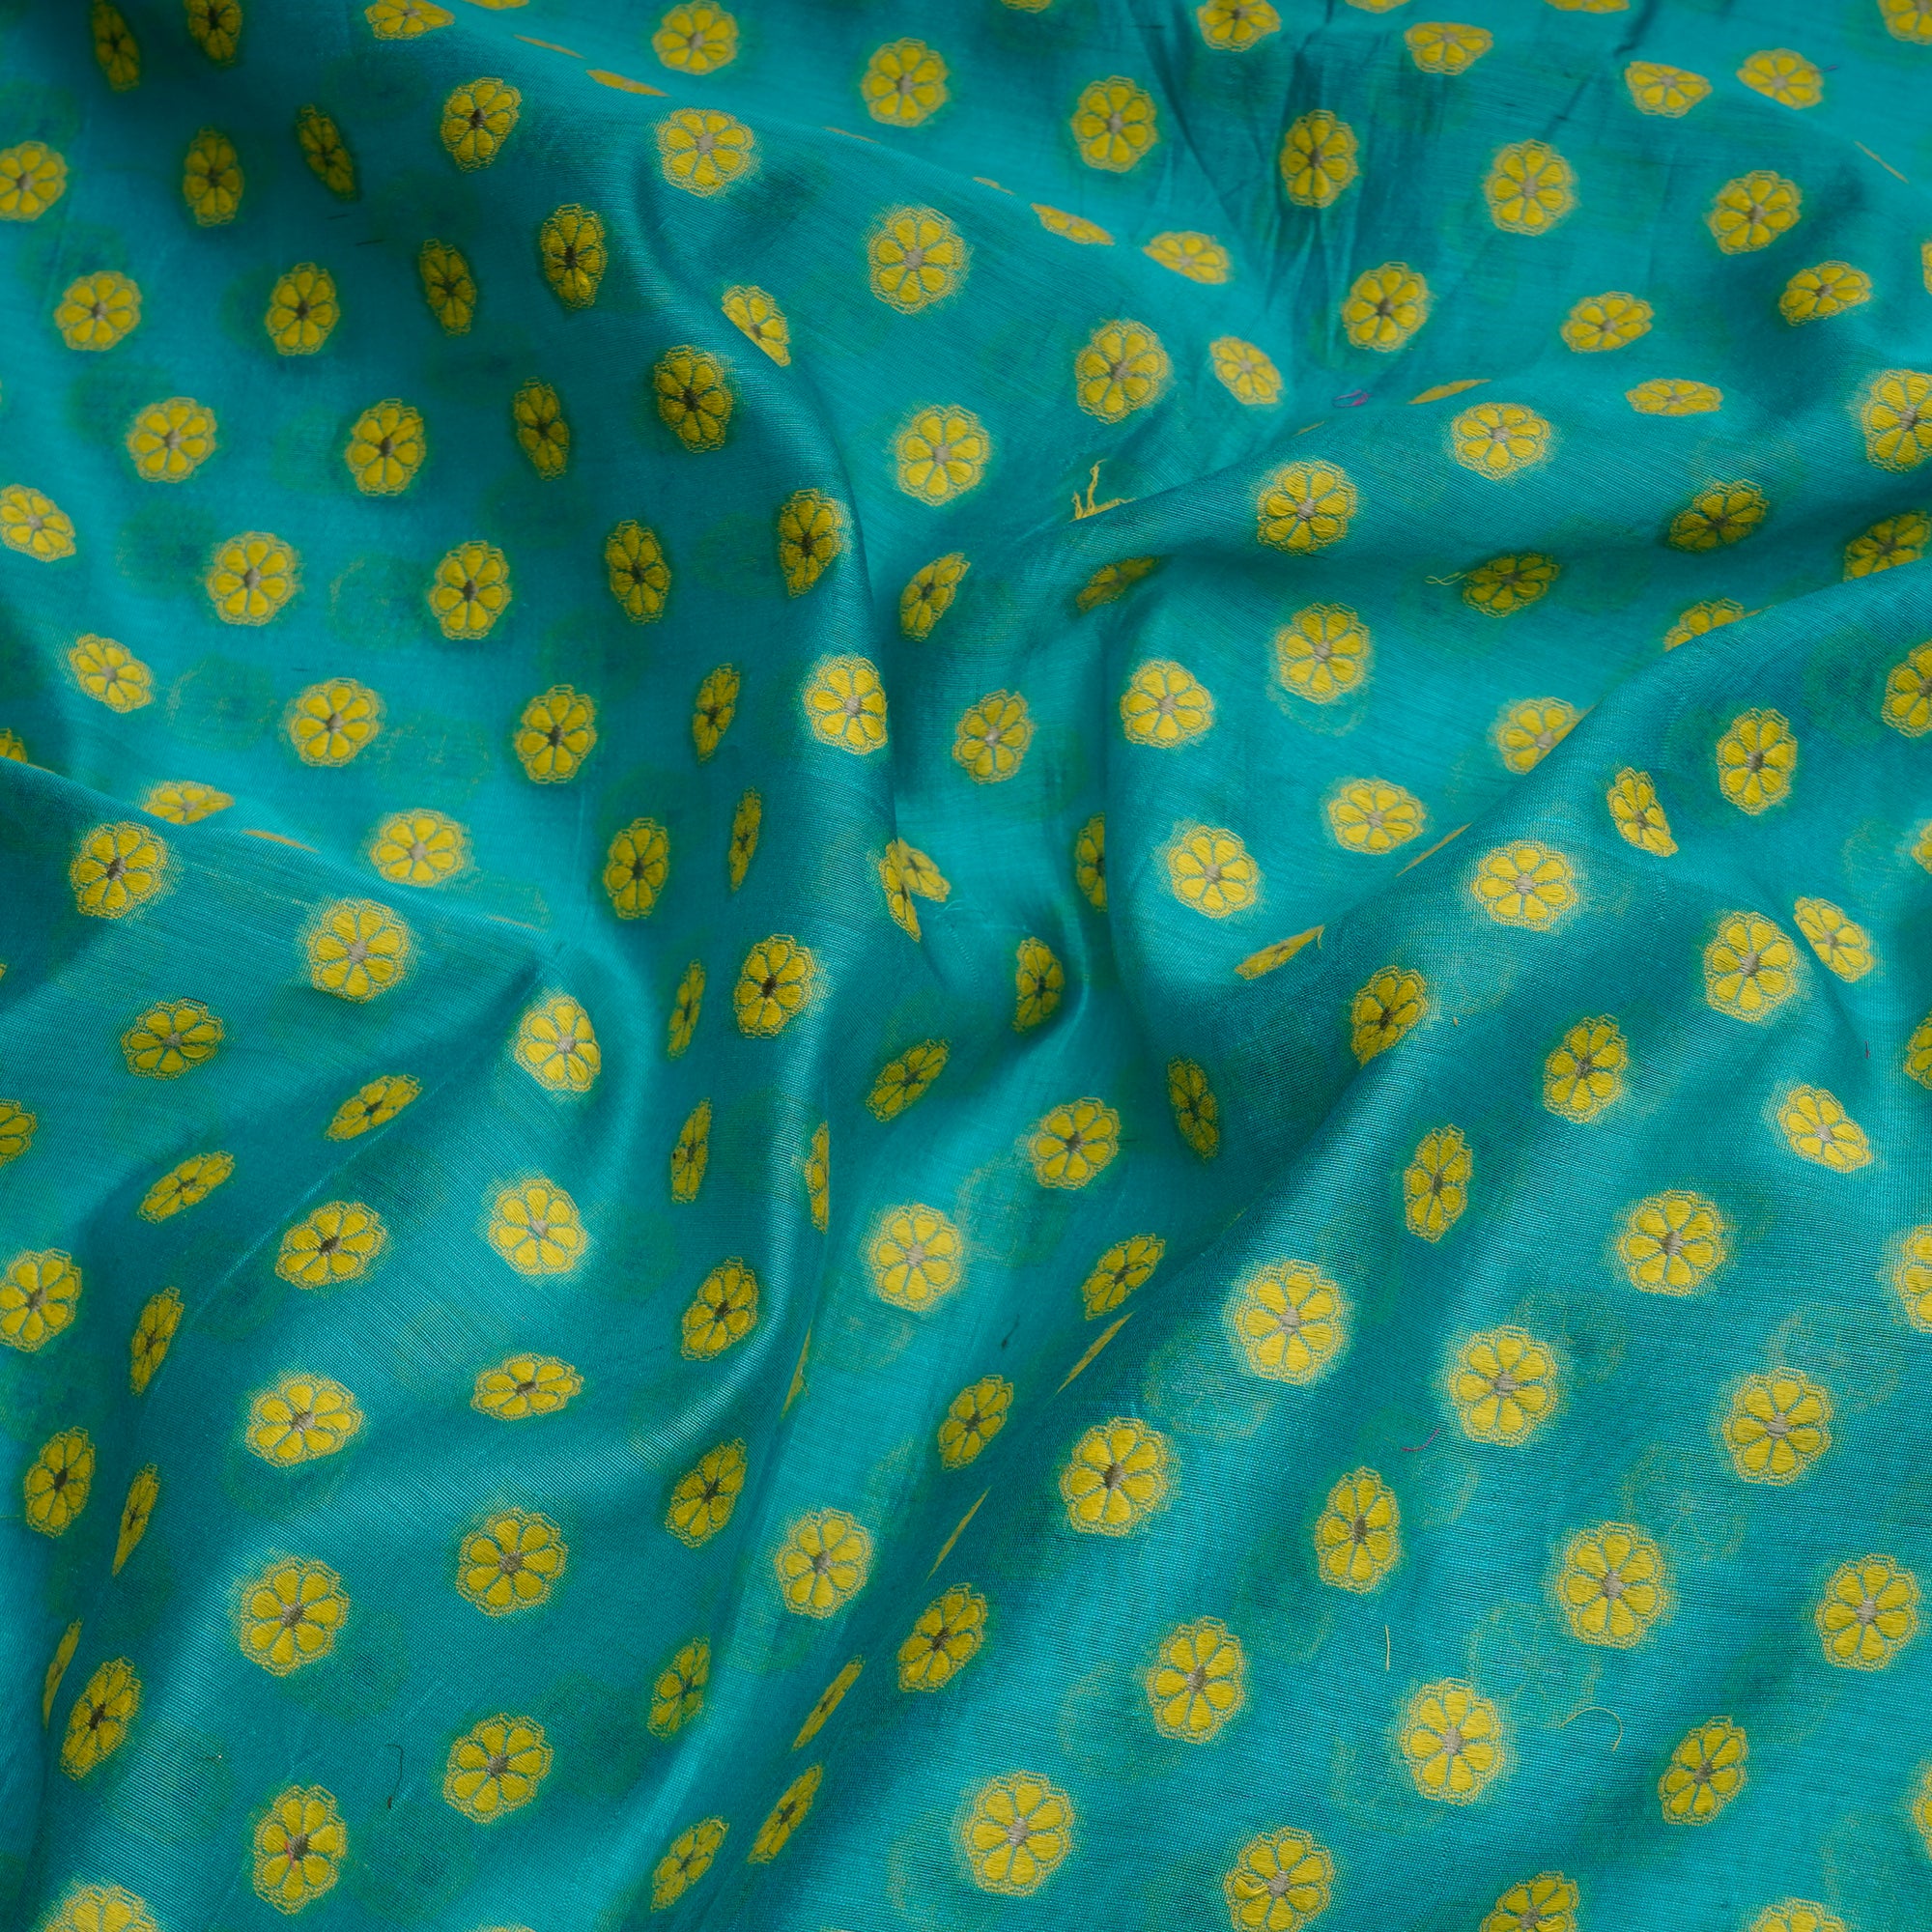 Sky Blue- Yellow Booti Pattern Handwoven Meenakari Chanderi Brocade Fabric